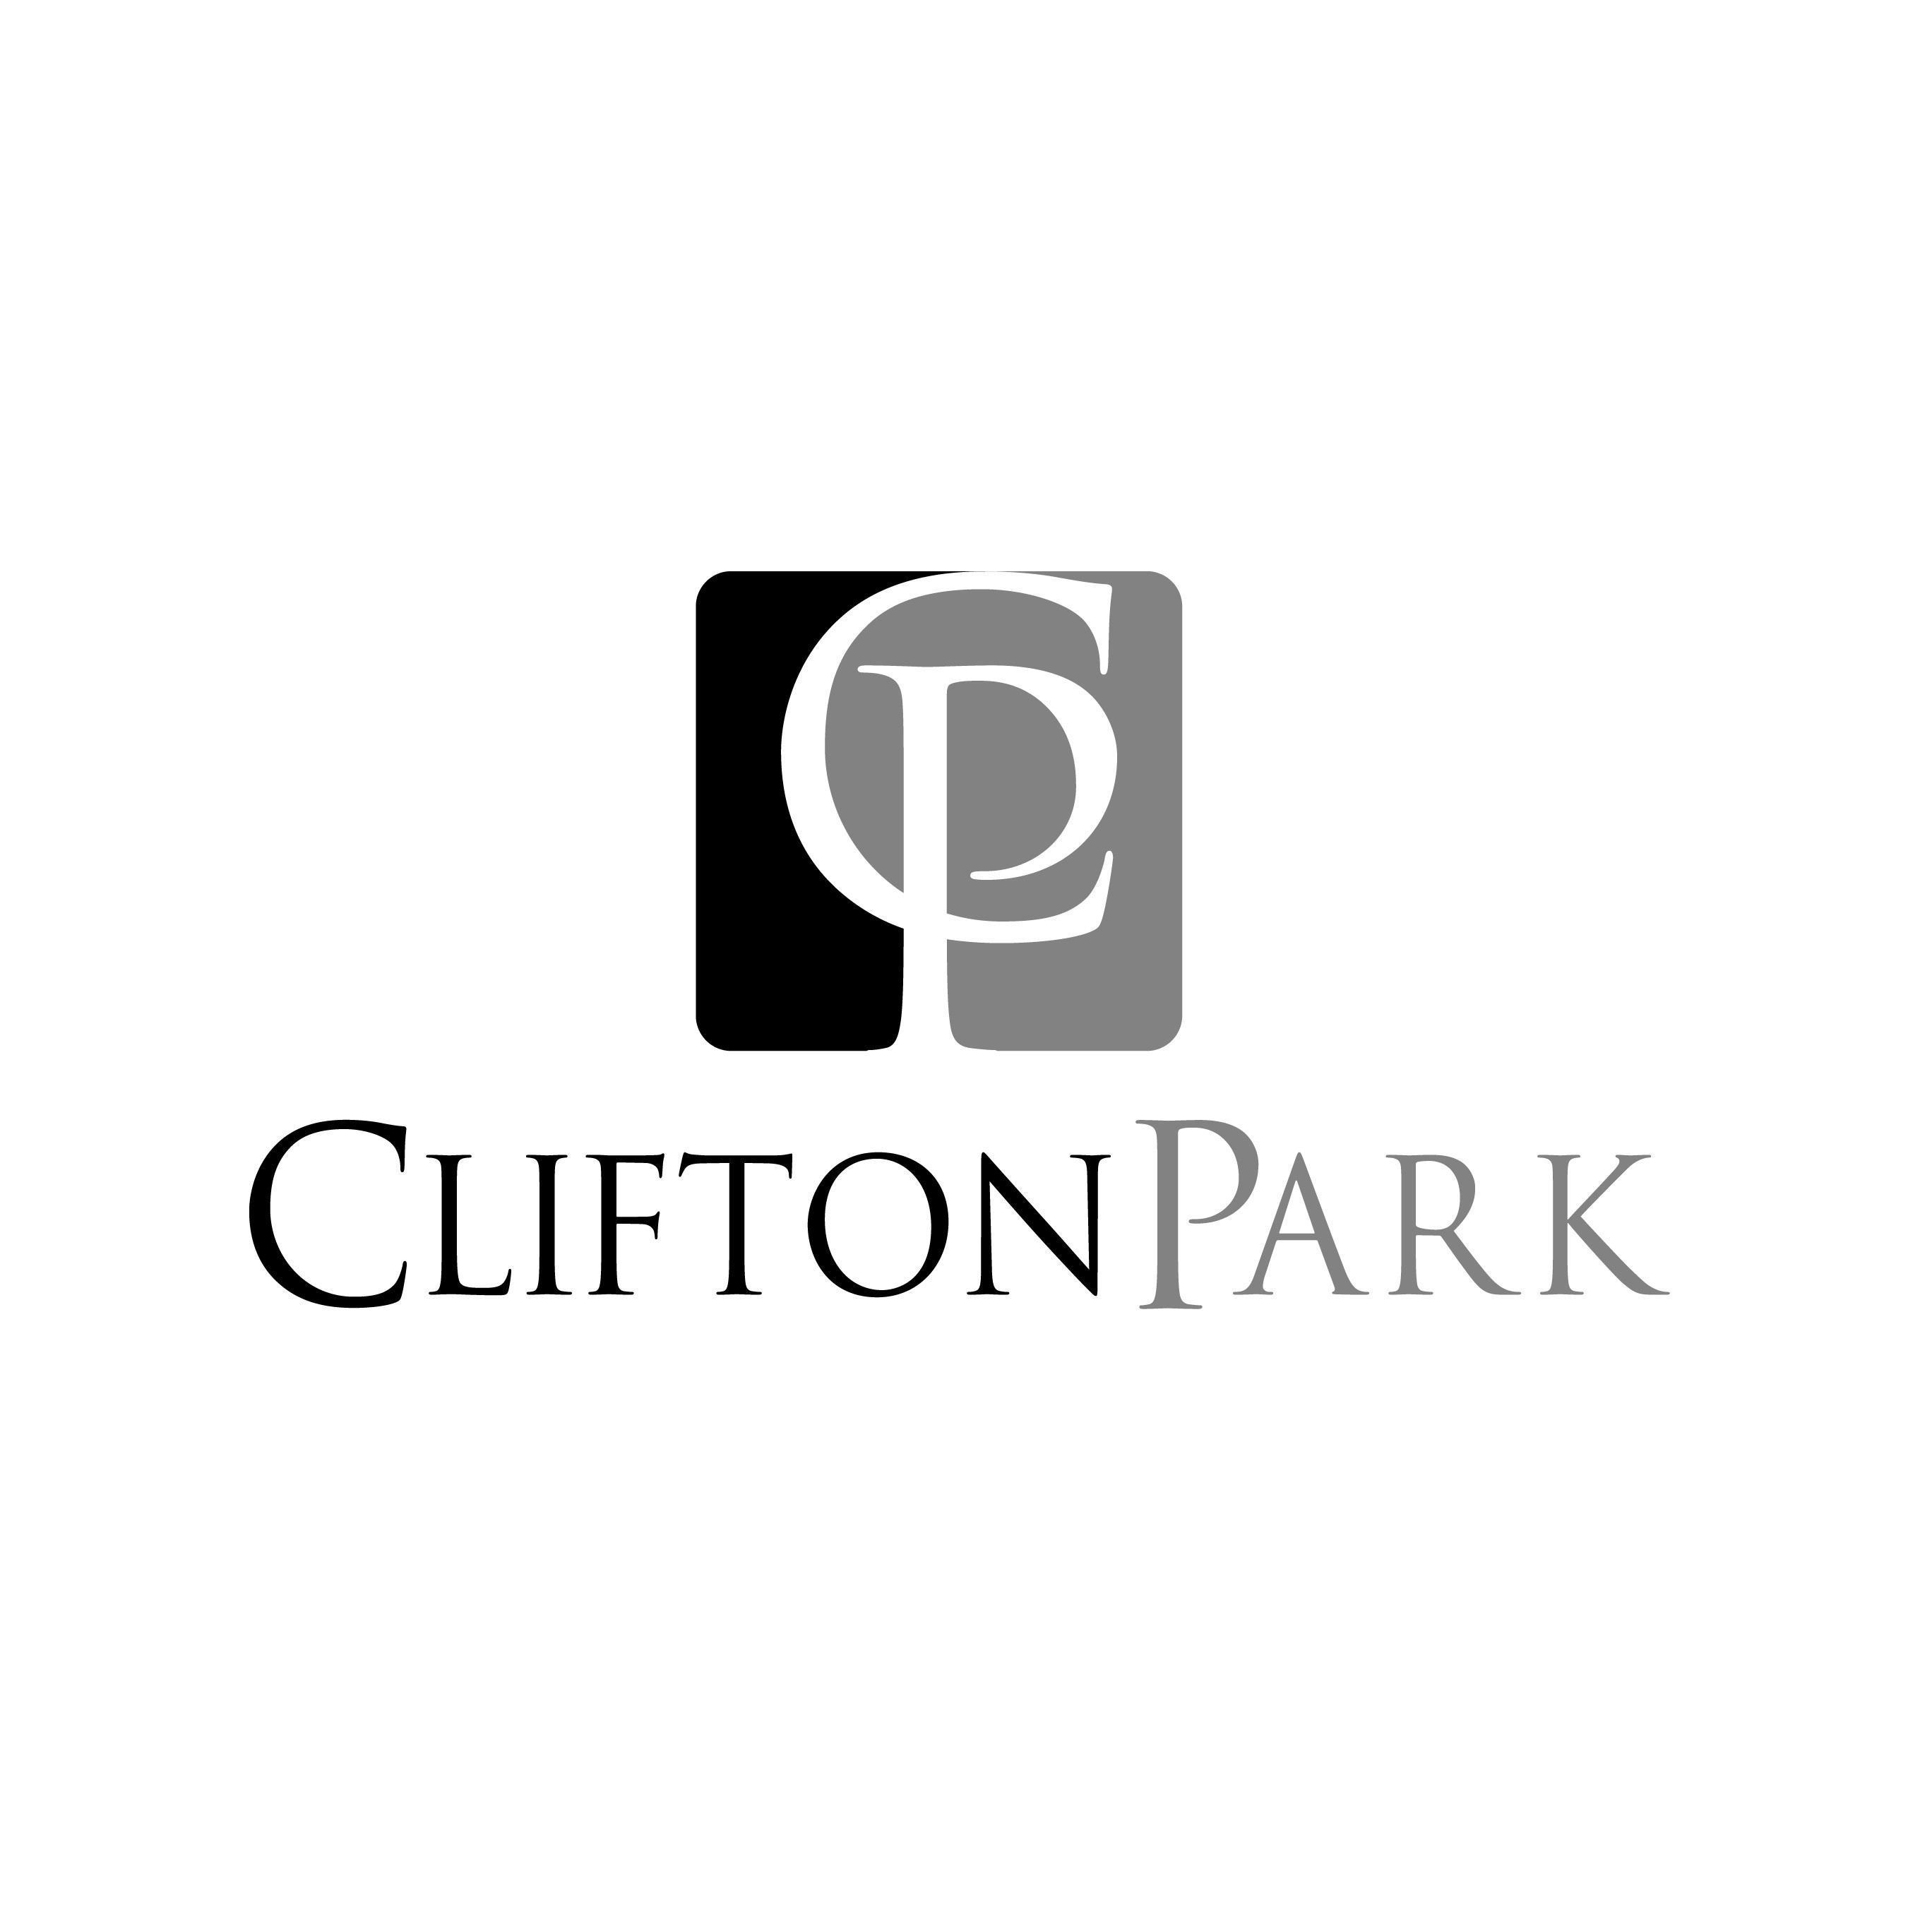 Clifton Park New Albany Logo